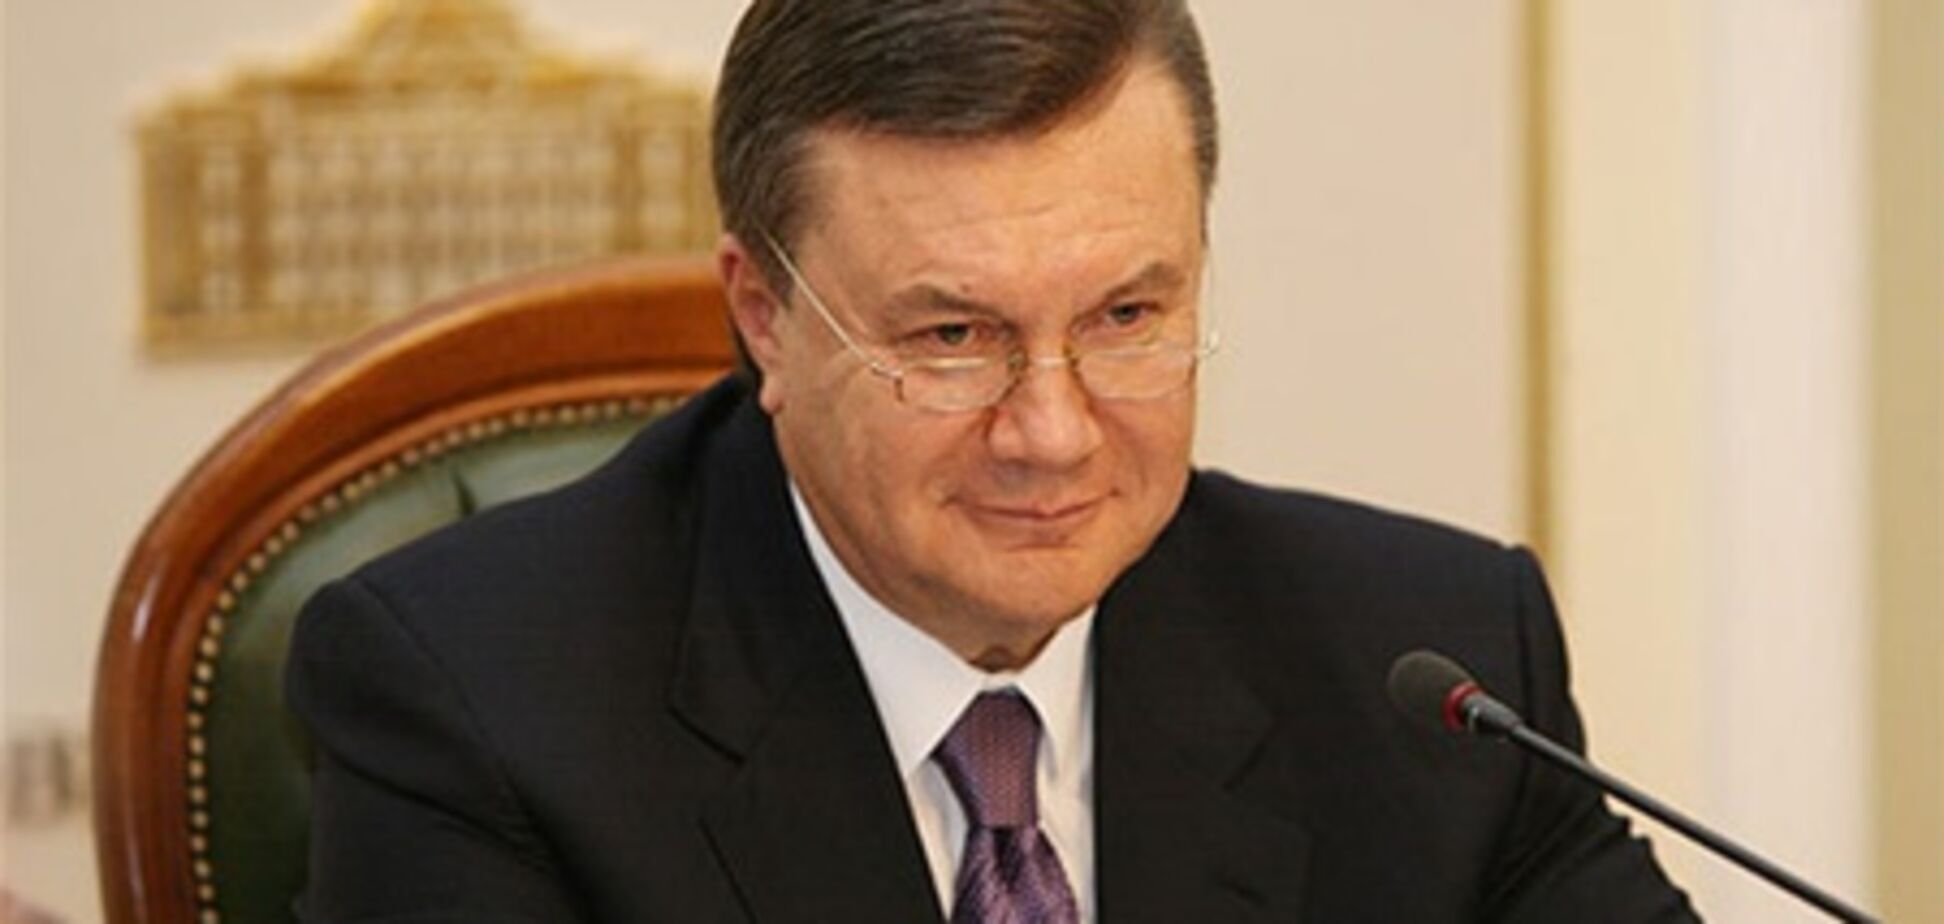 Янукович отпразднует День рождения в Крыму